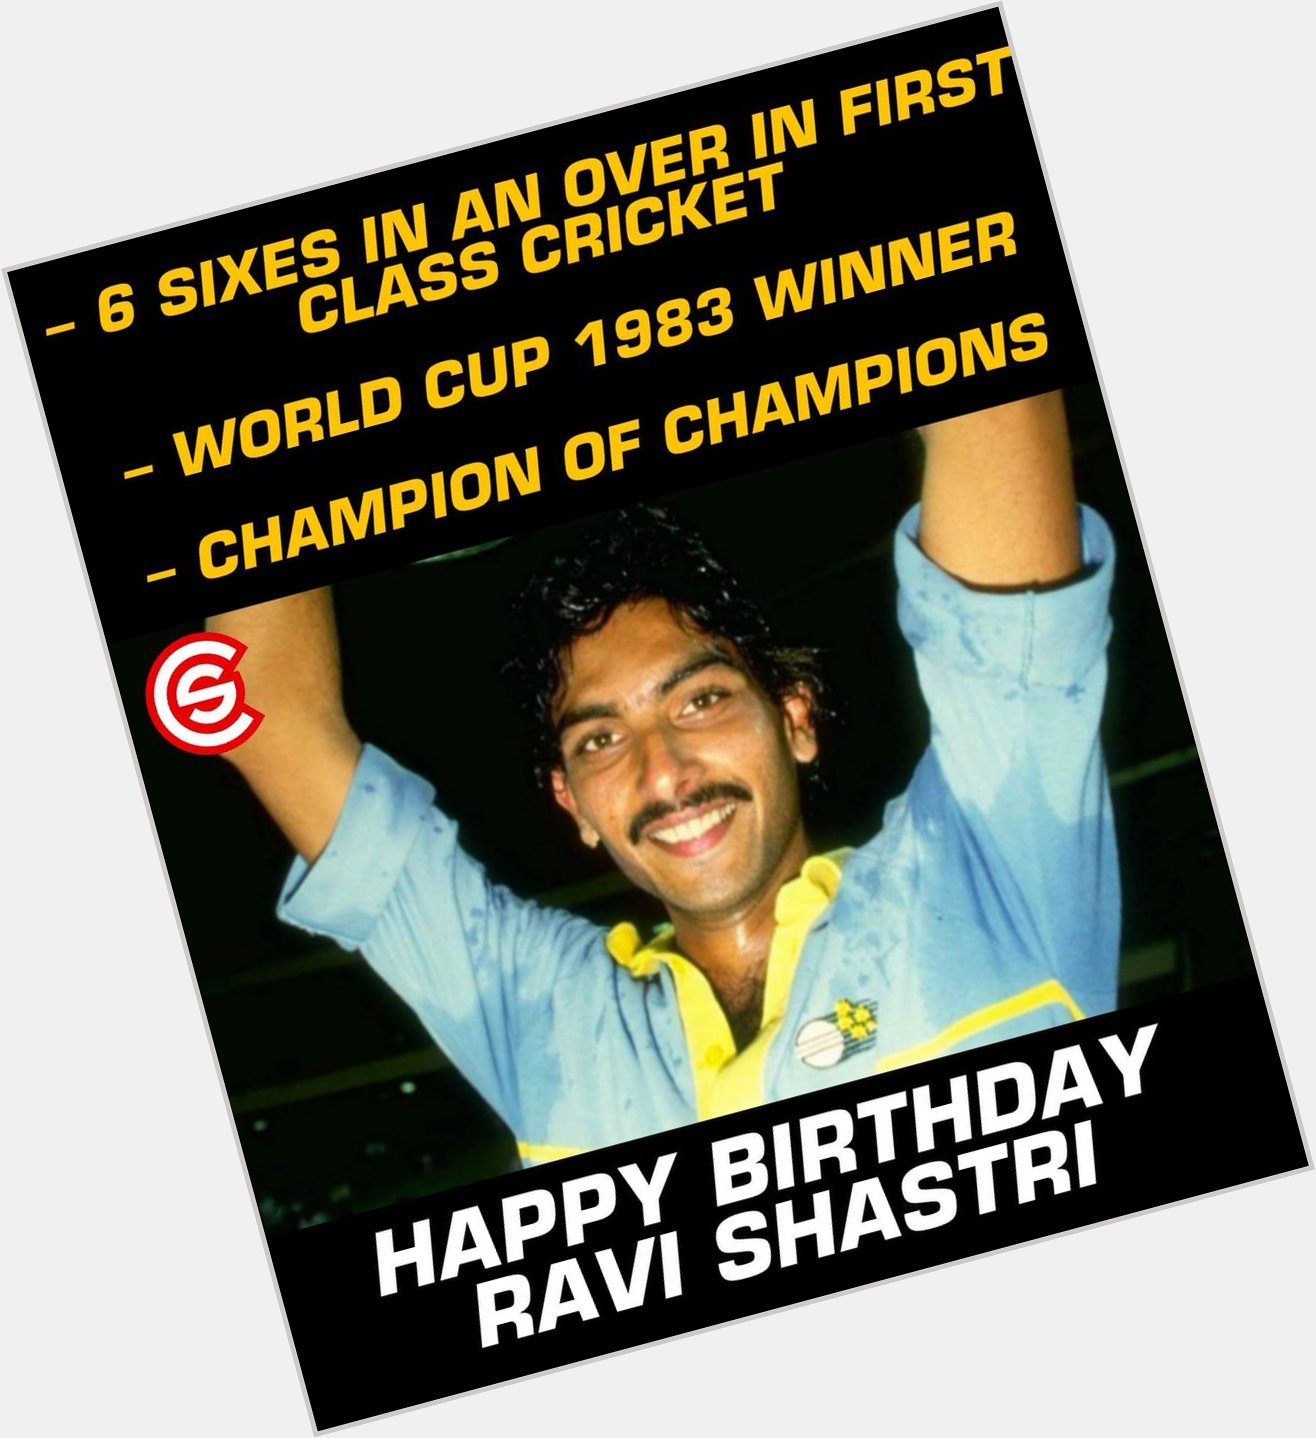 Happy Birthday, Ravi Shastri!! 